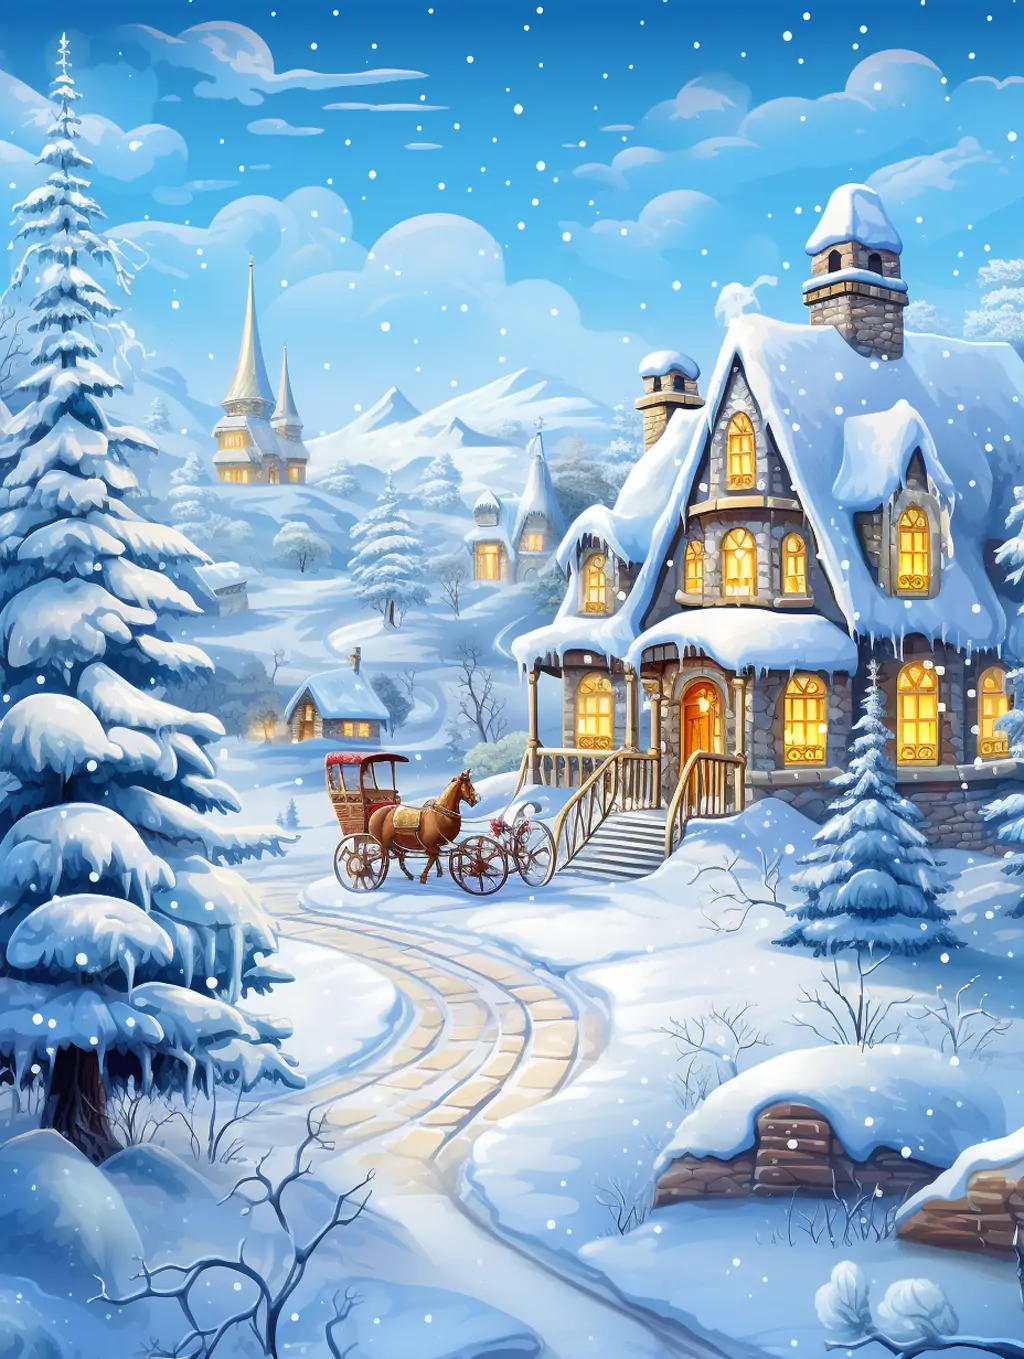 手绘唯美浪漫冬天雪景圣诞节雪橇童话城堡建筑场景插图海报midjourney关键词咒语分享-Ai宇宙吧-